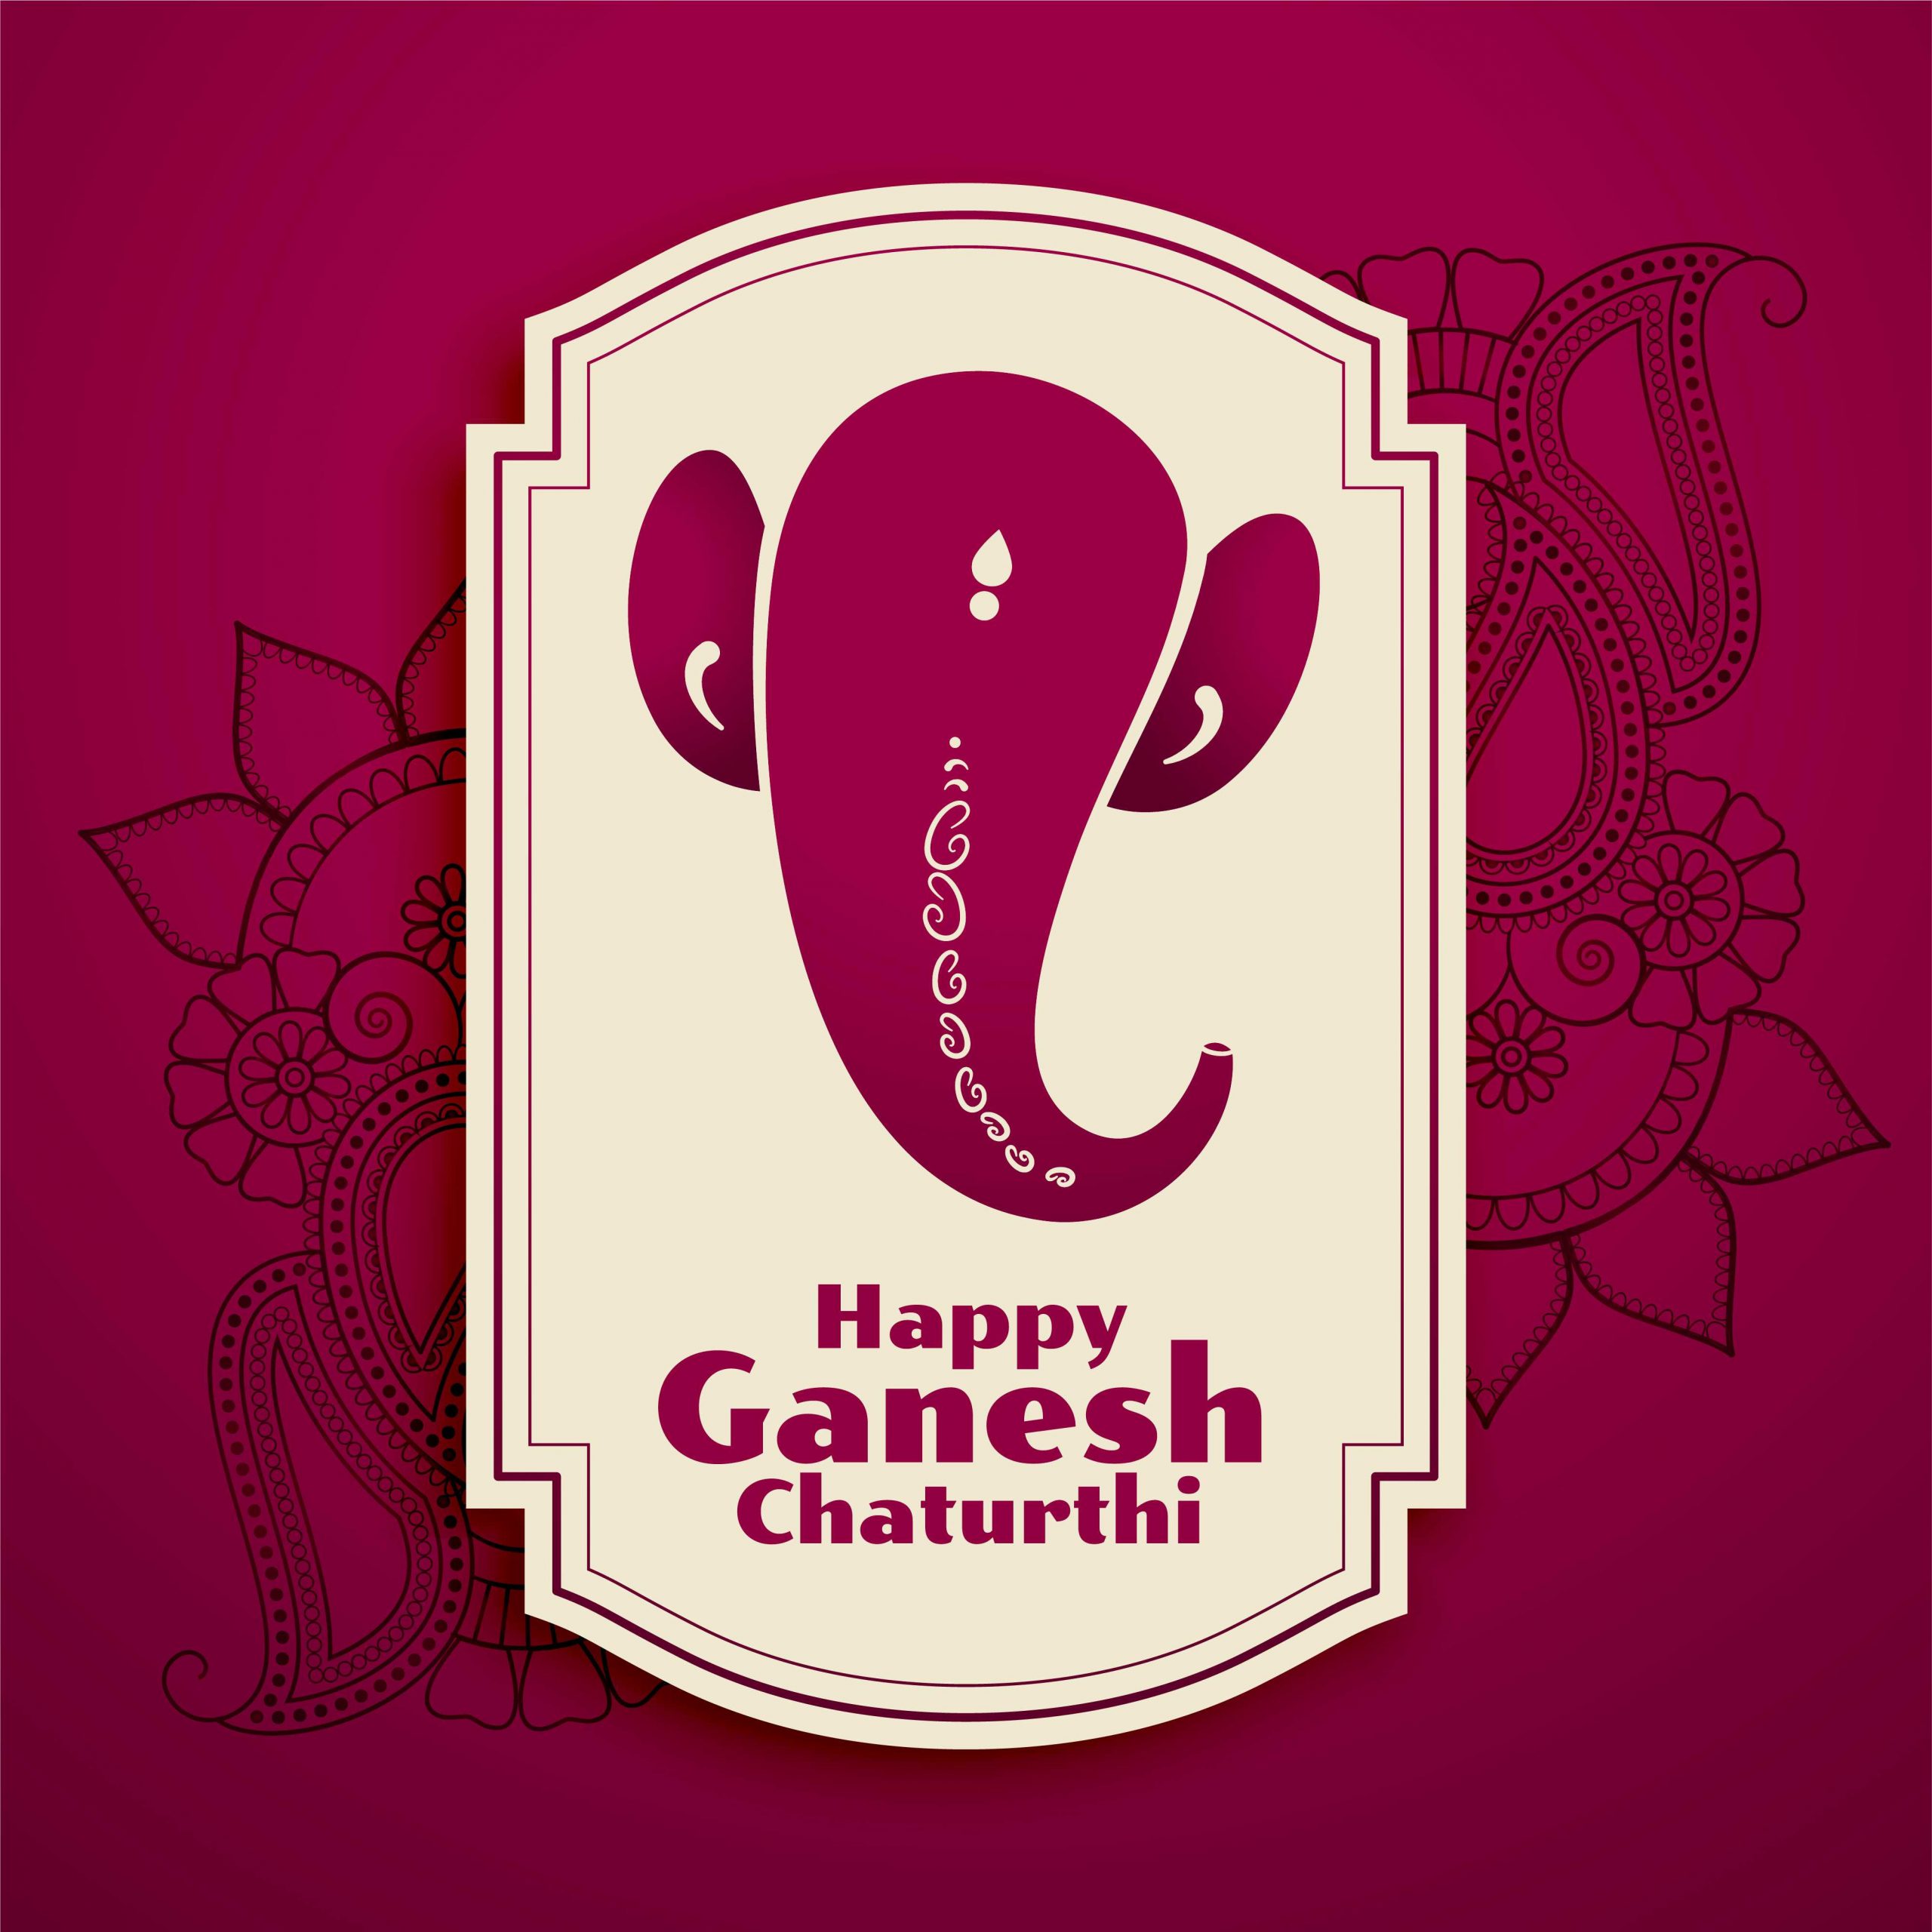 Ganesh Chaturthi images